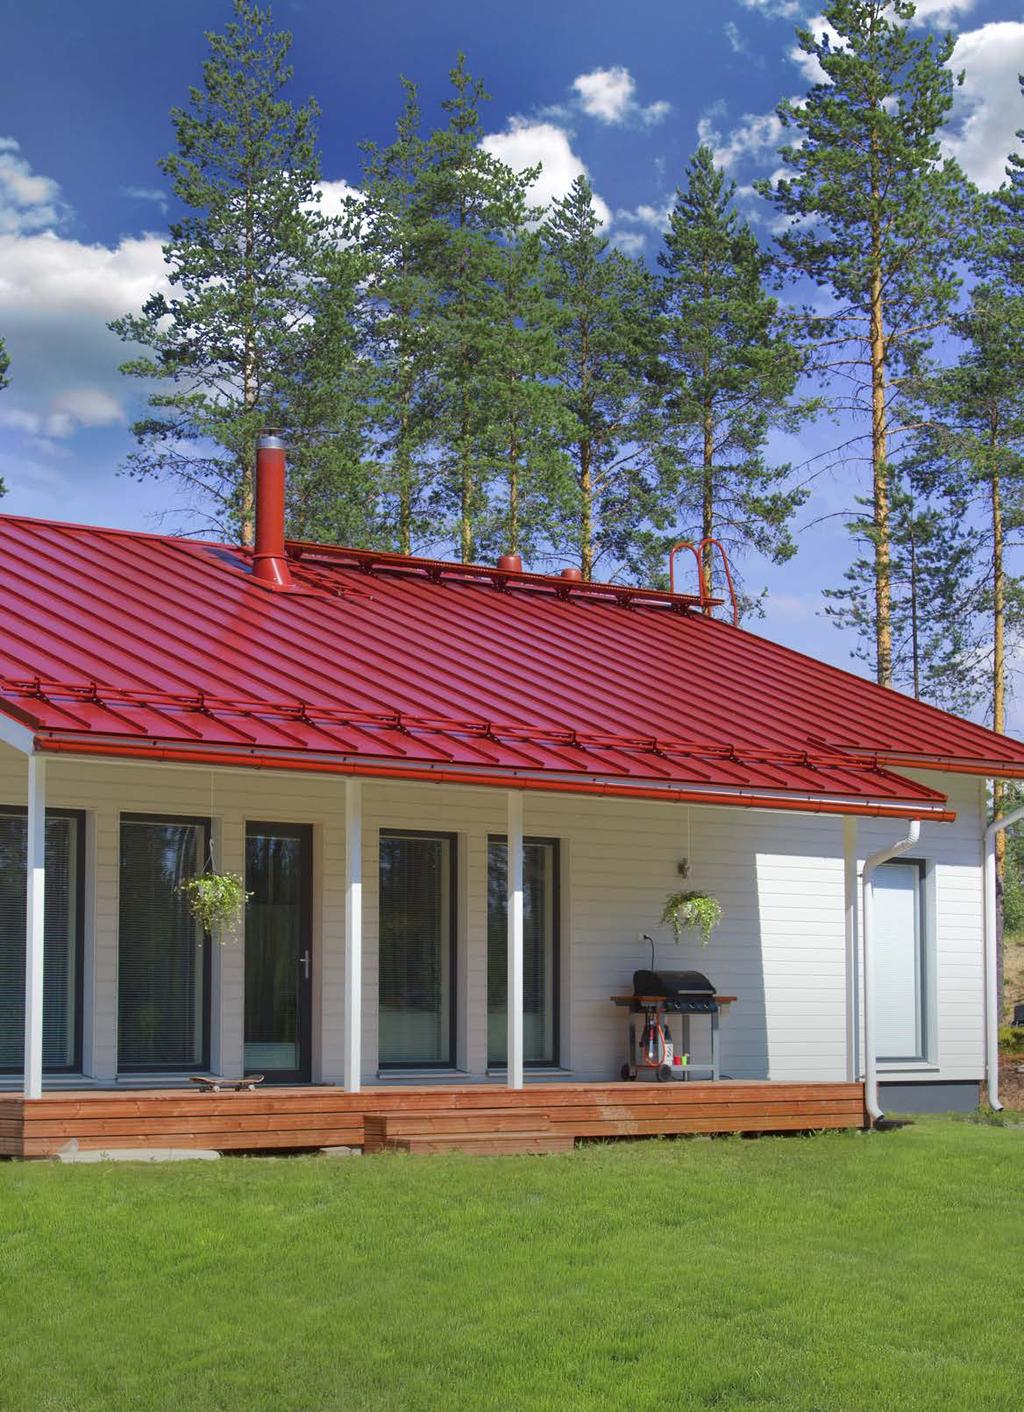 50 VUODEN TEKNINEN TAKUU NOSTALGIA VÄSYMÄTÖNTÄ RYHTIÄ Oikean profiilin ja värin valinta antaa talosi katolle näyttävyyttä.